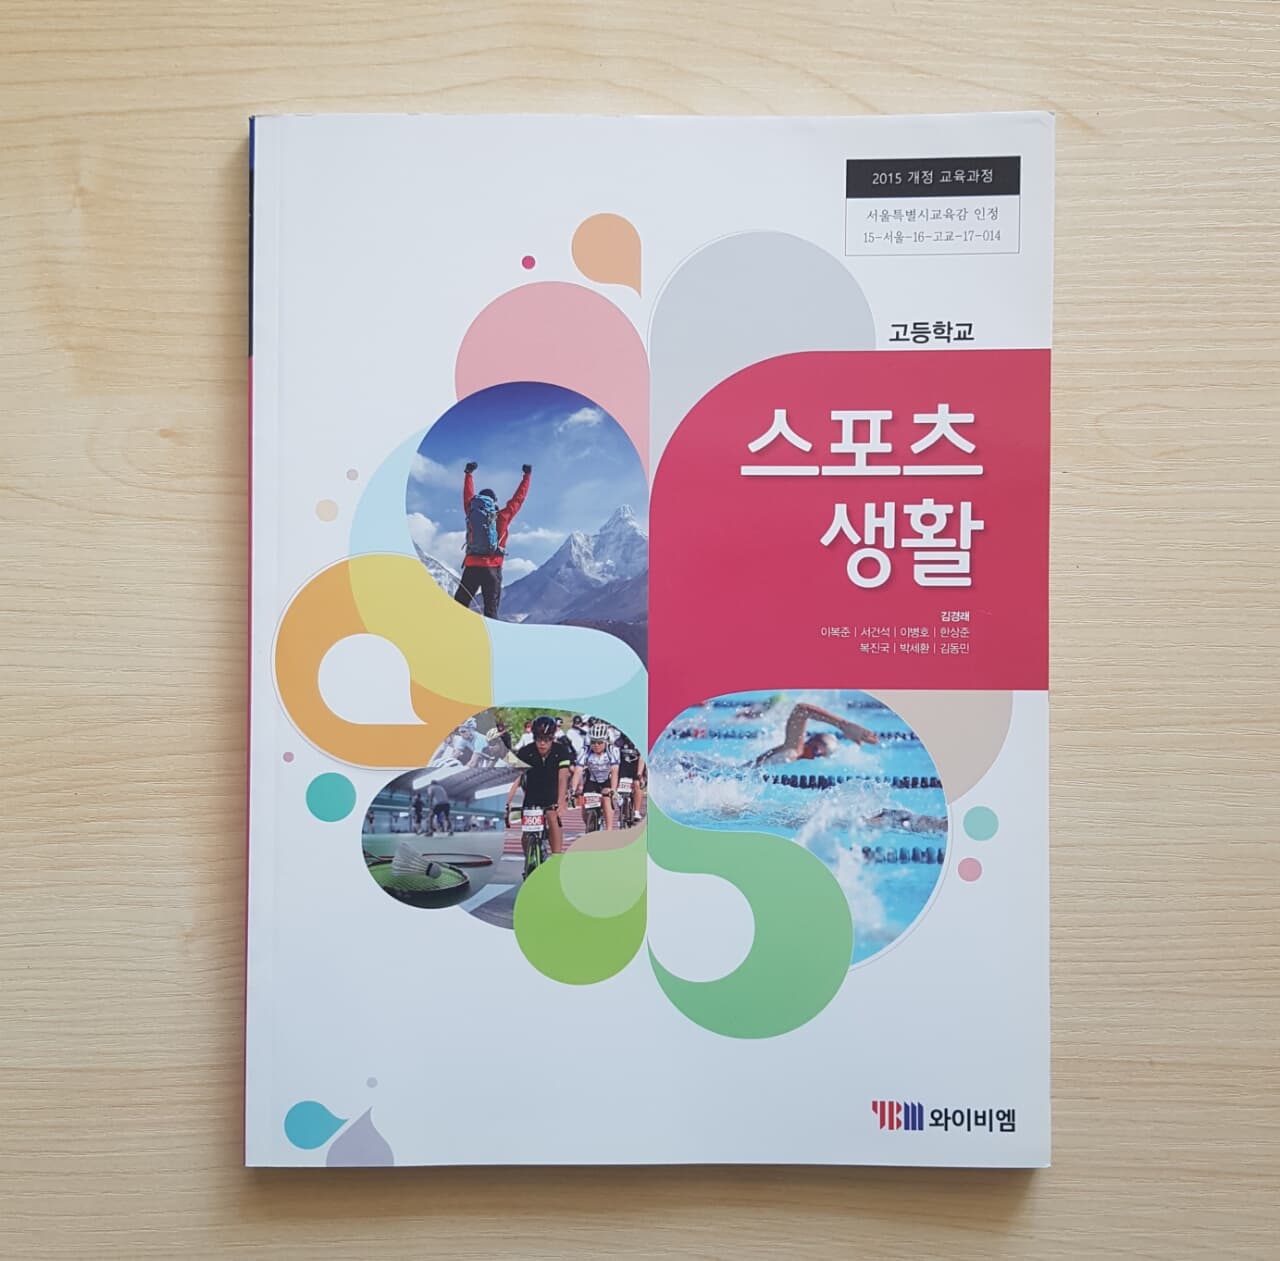 고등학교 스포츠 생활 ( YBM 김경래 ) - 교과서 (미사용)